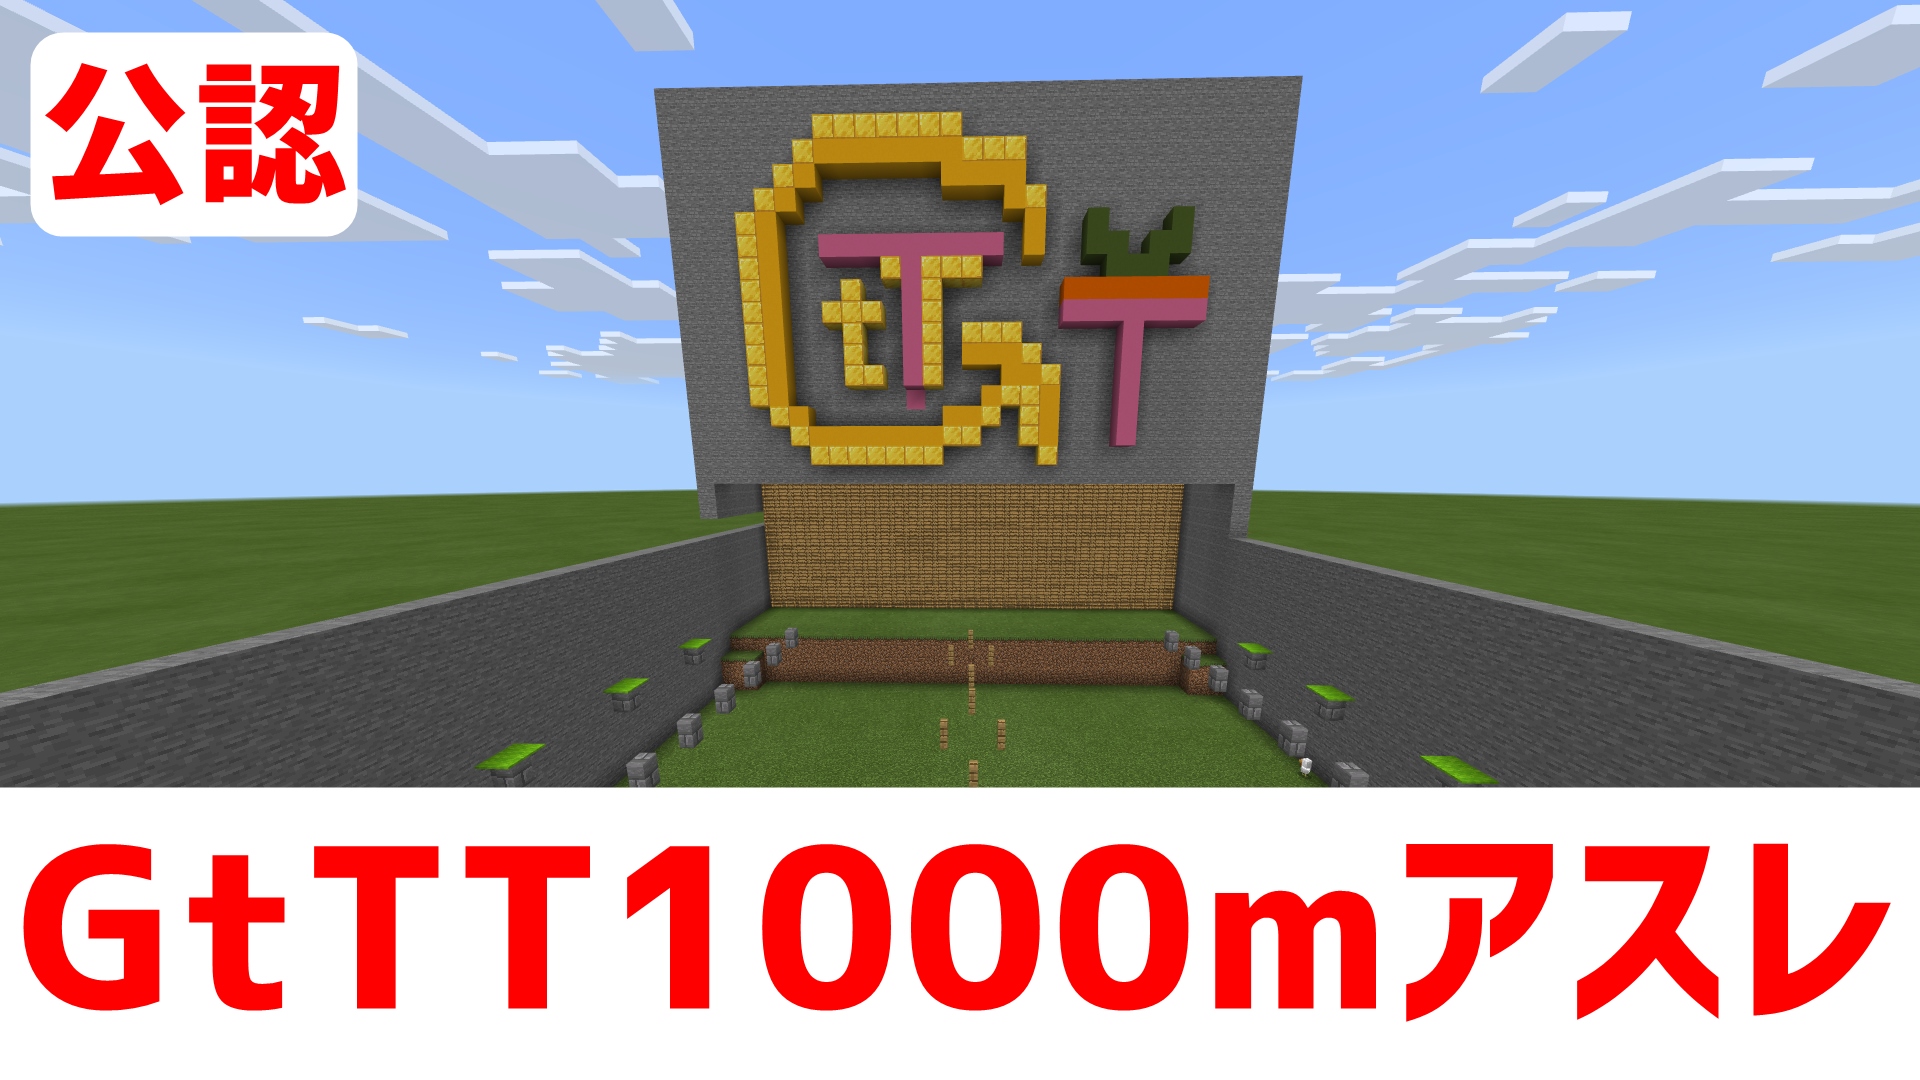 Gttt1000公認紹介-728615c9